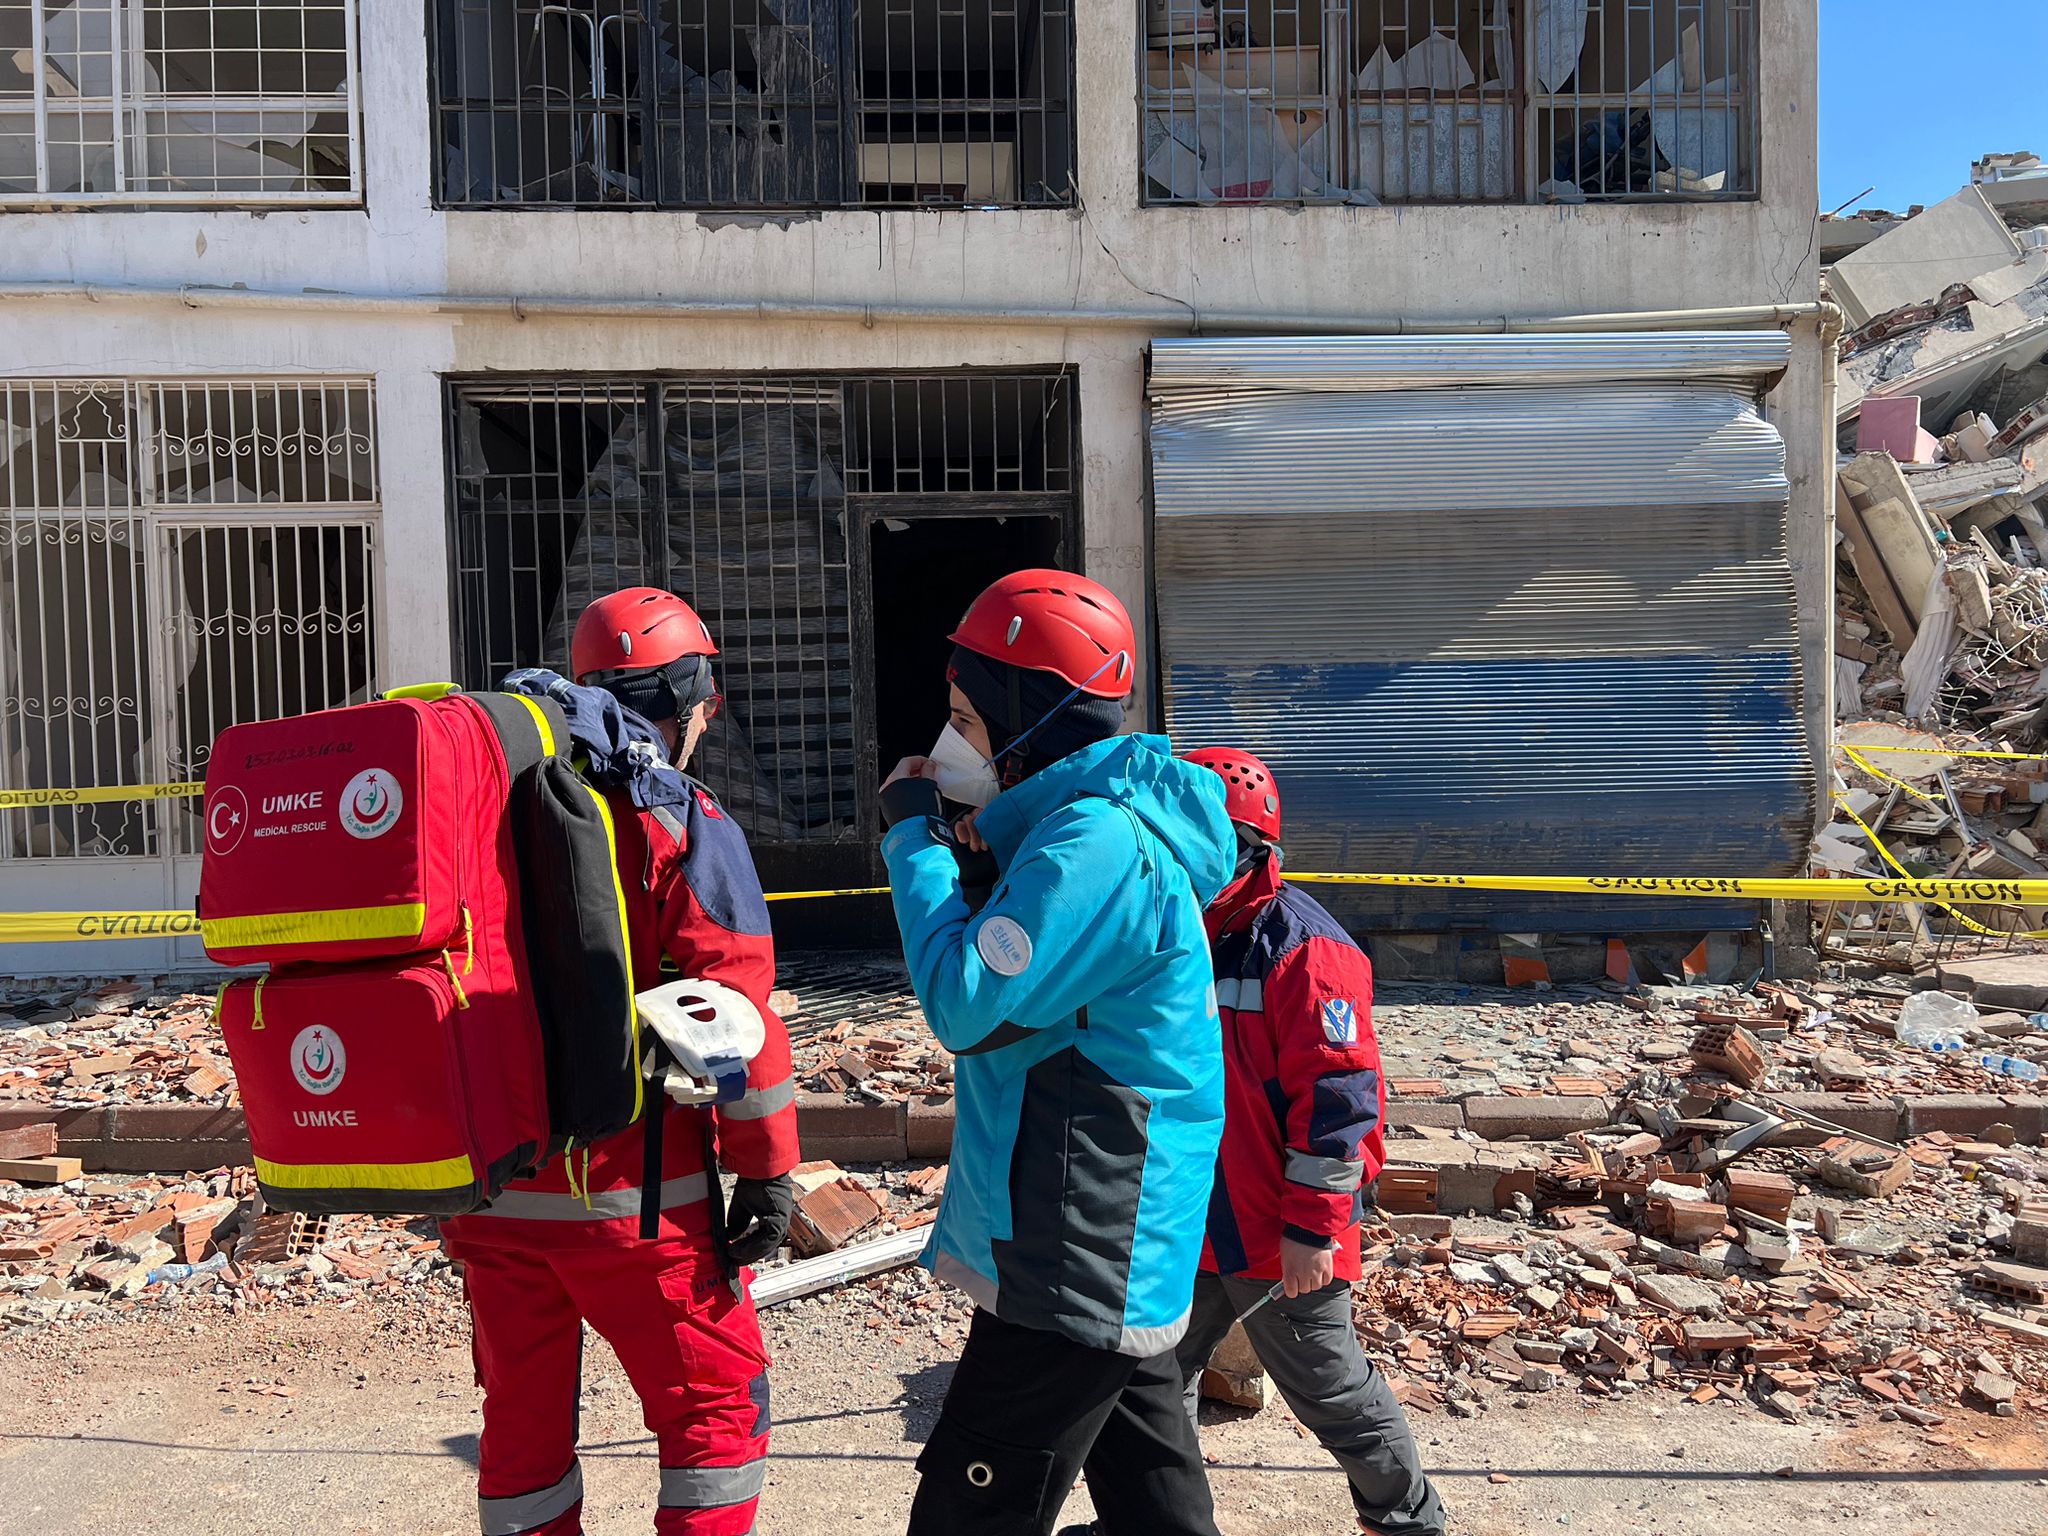 Nevşehir Umke ve 112 Sağlık Deprem (10)